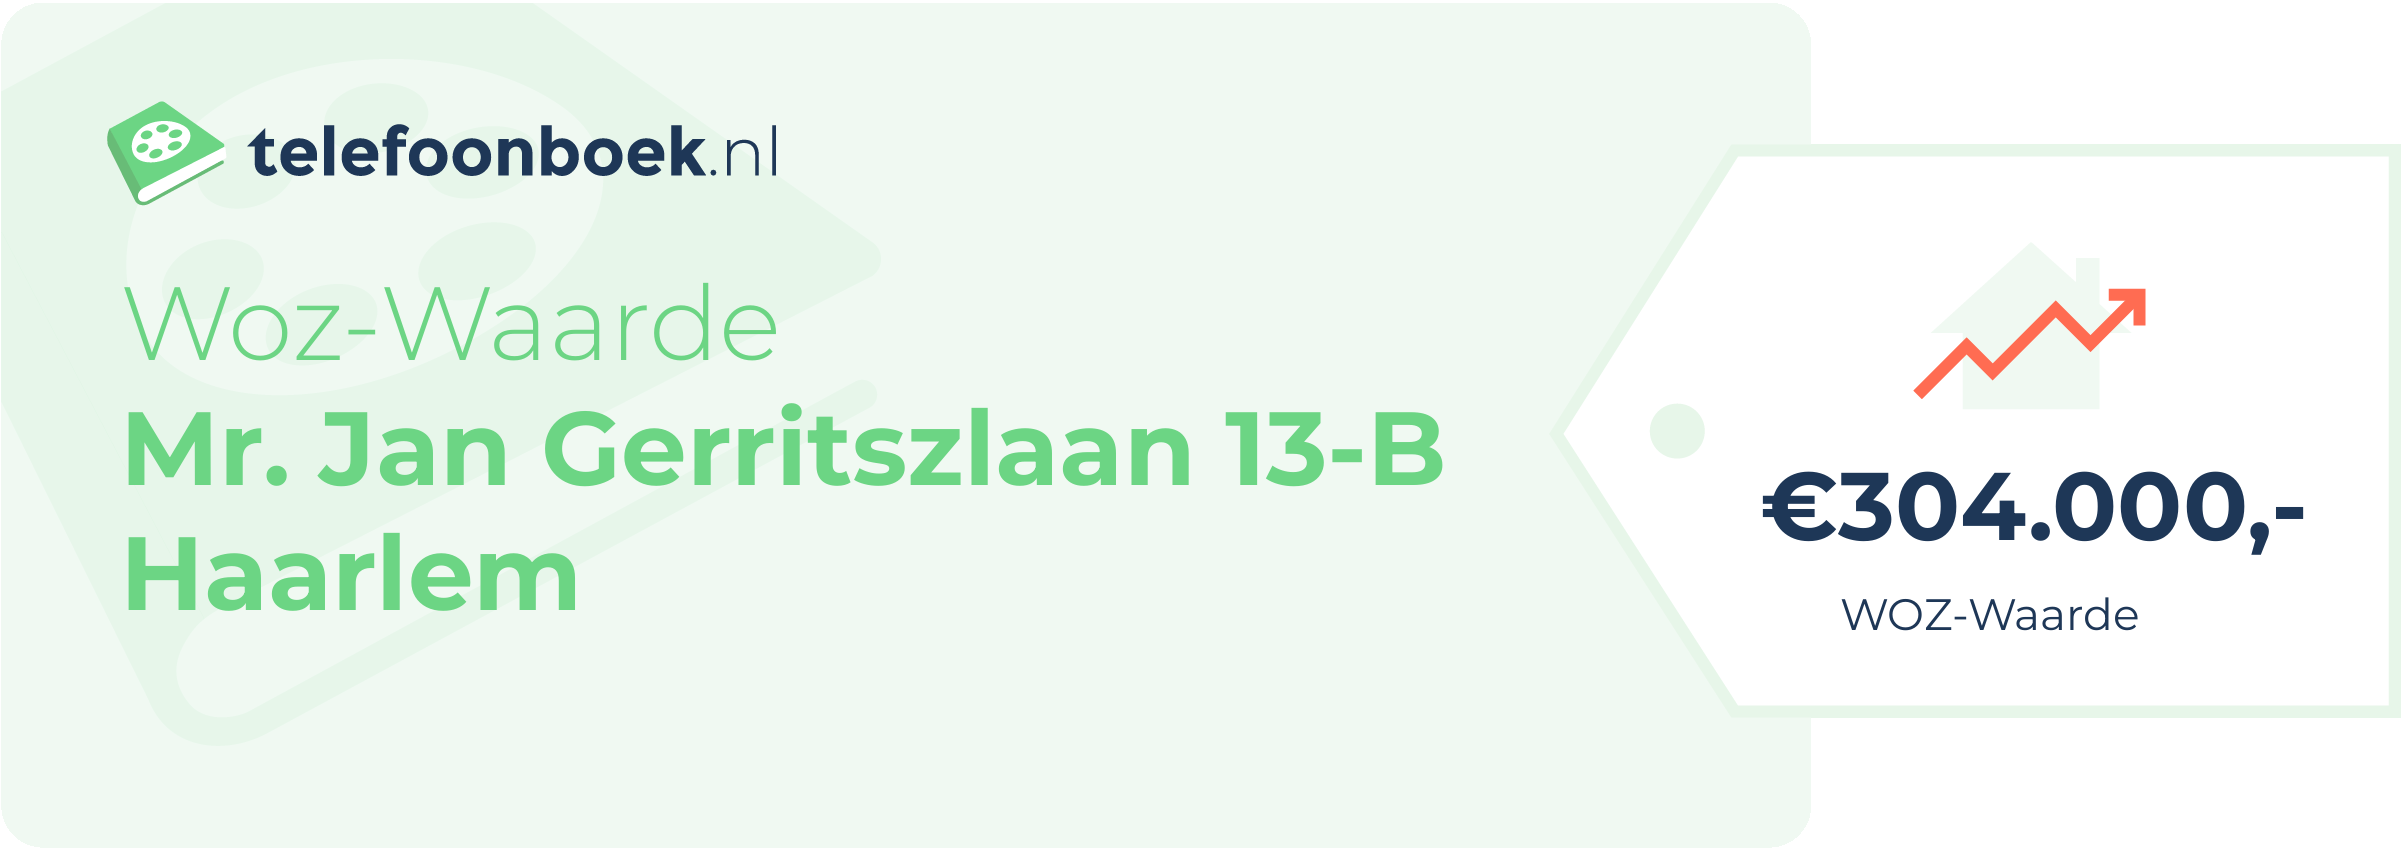 WOZ-waarde Mr. Jan Gerritszlaan 13-B Haarlem